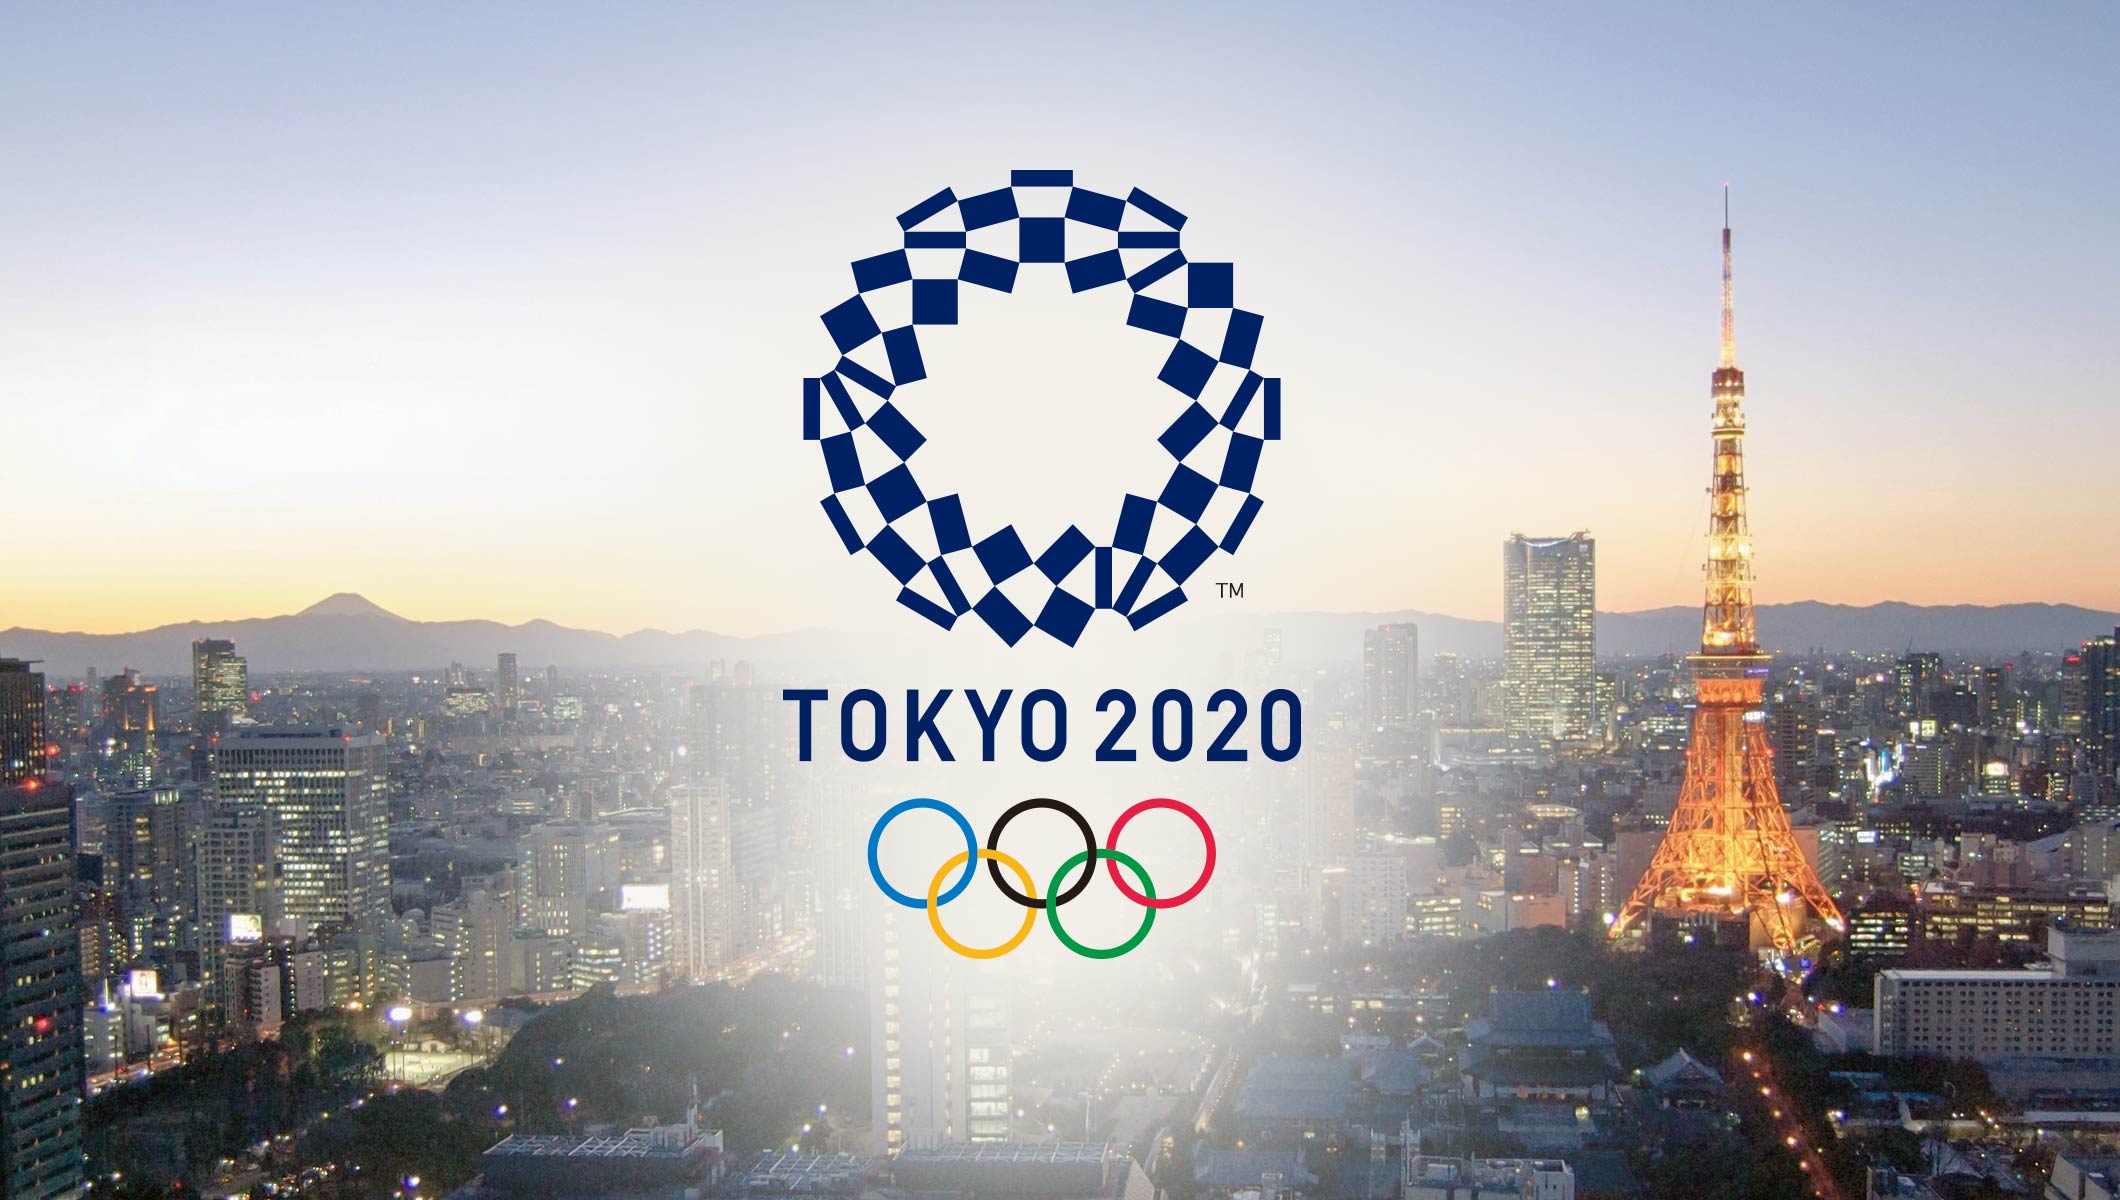 Տոկիոյում մեկնարկել է Օլիմպիական խաղերի փակման արարողությունը. ուղիղ միացում